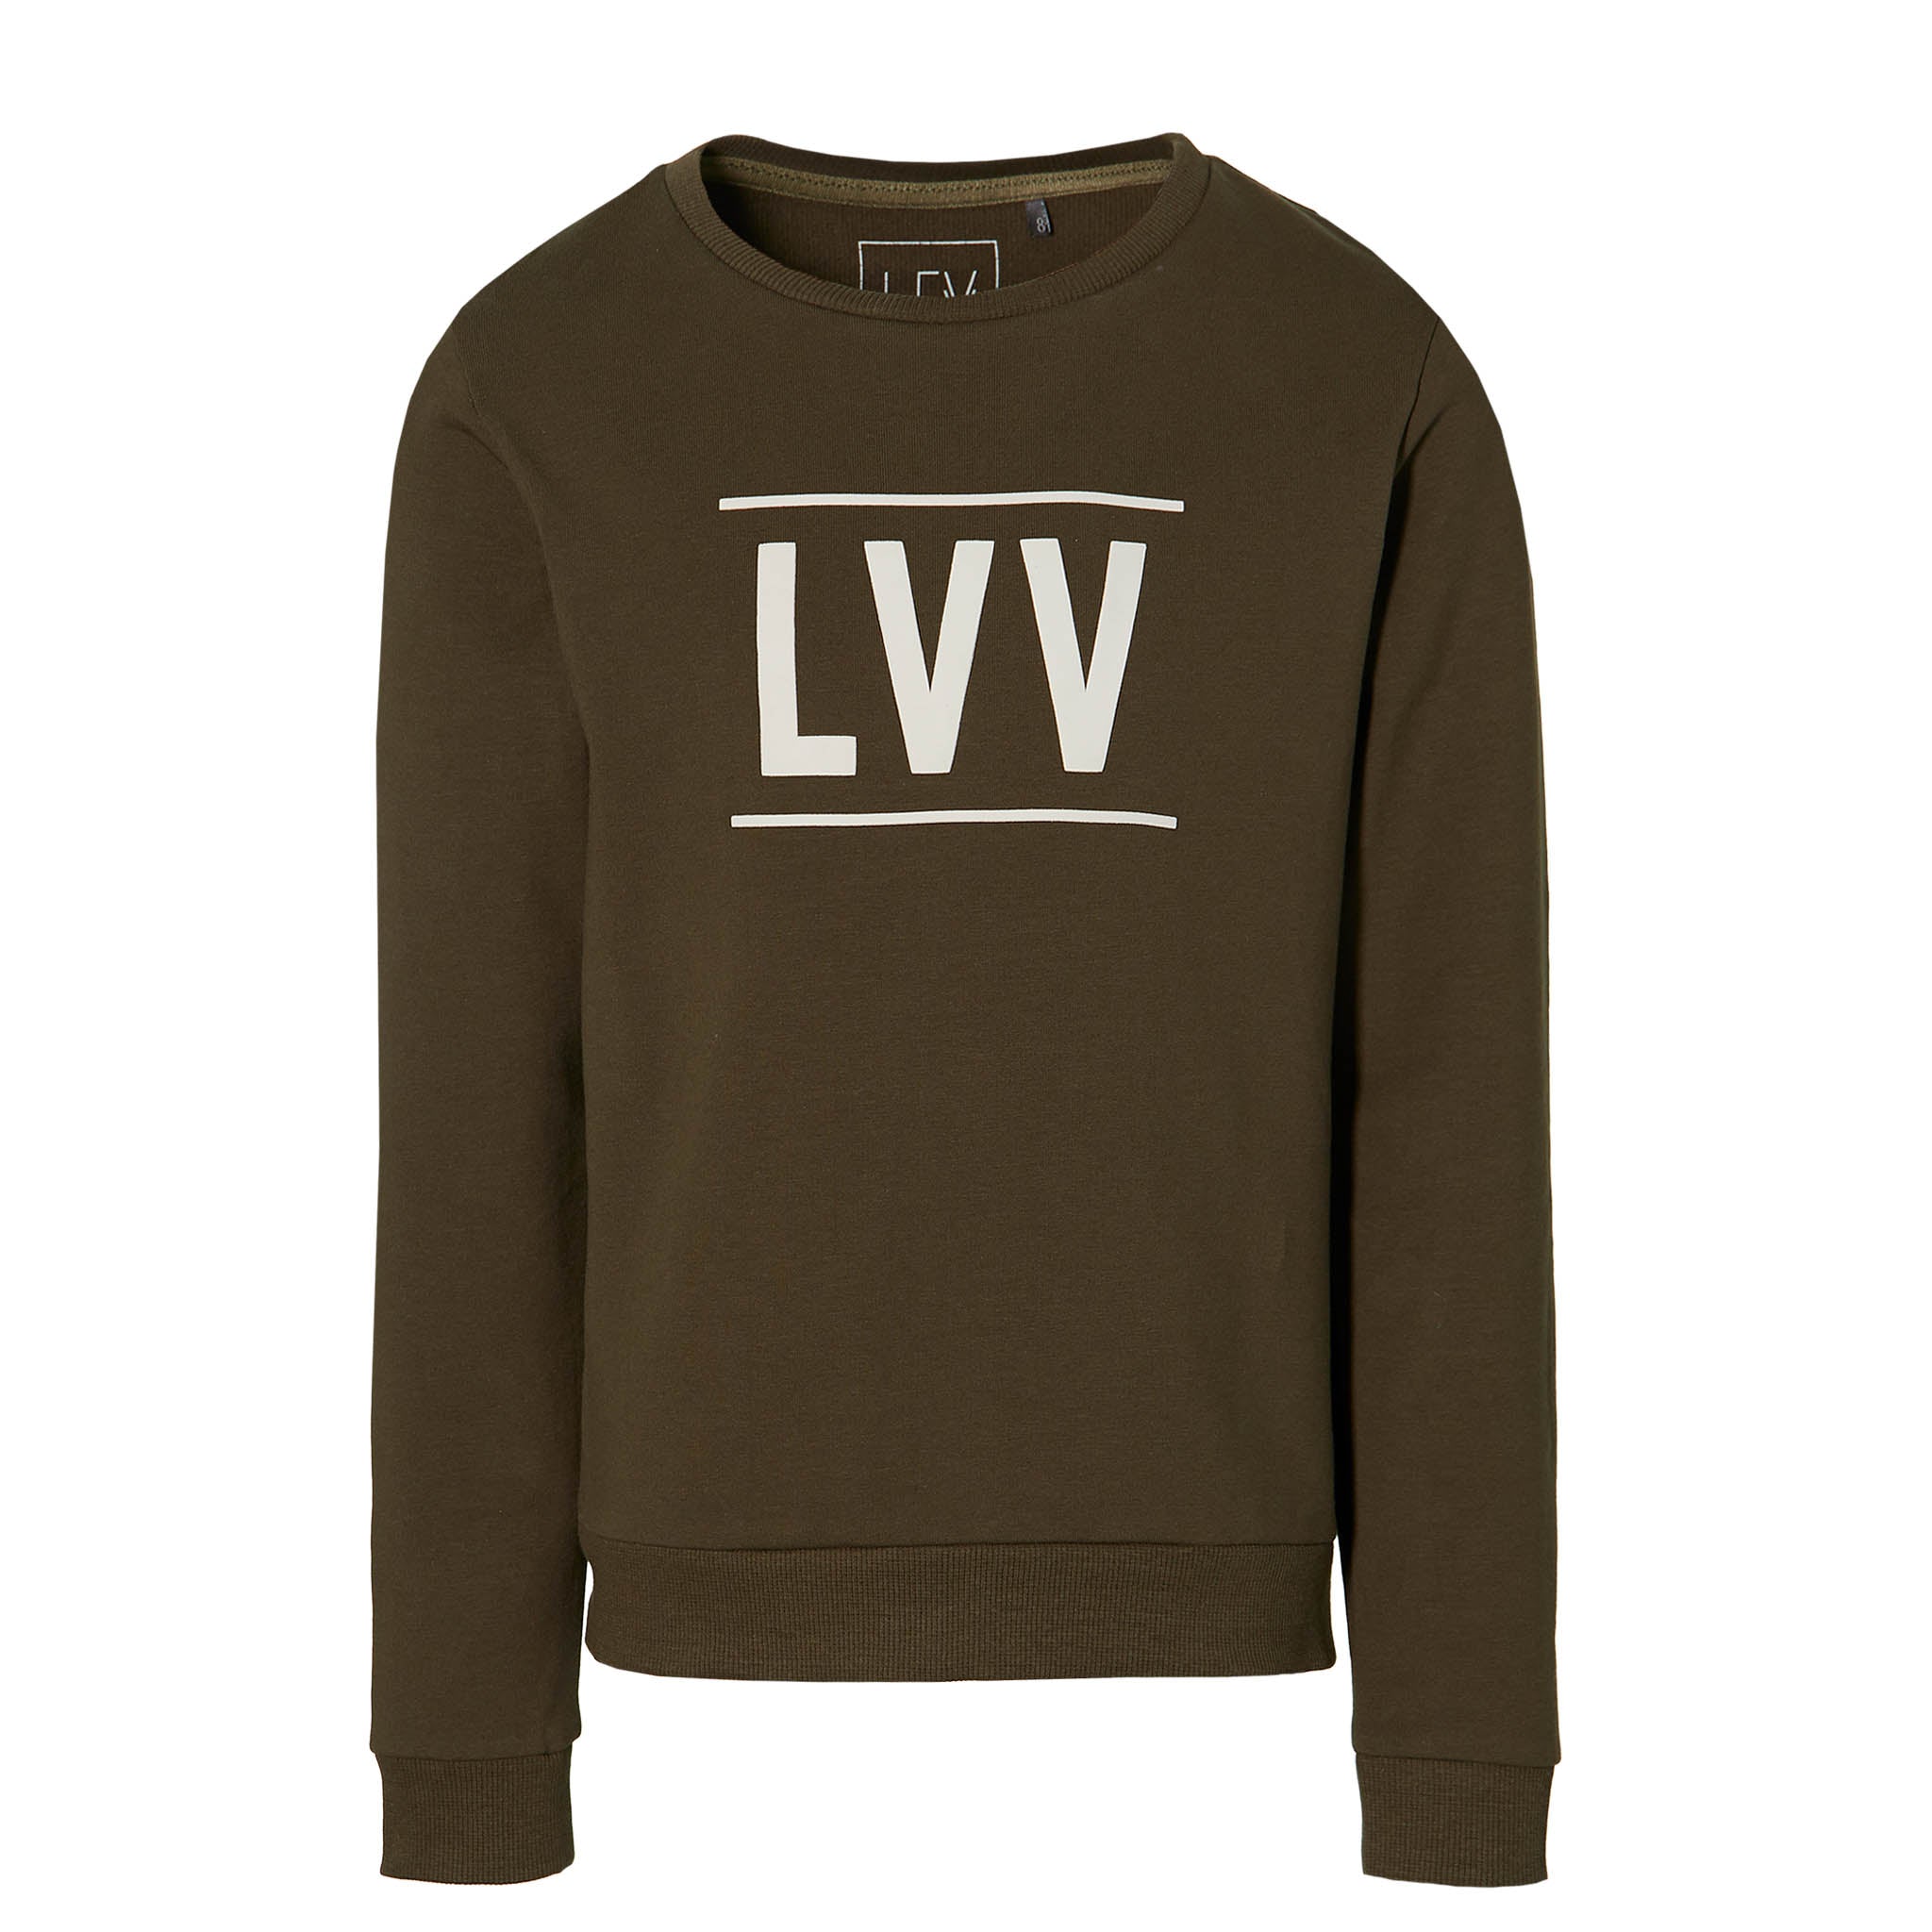 Levv Sweater Kean W201